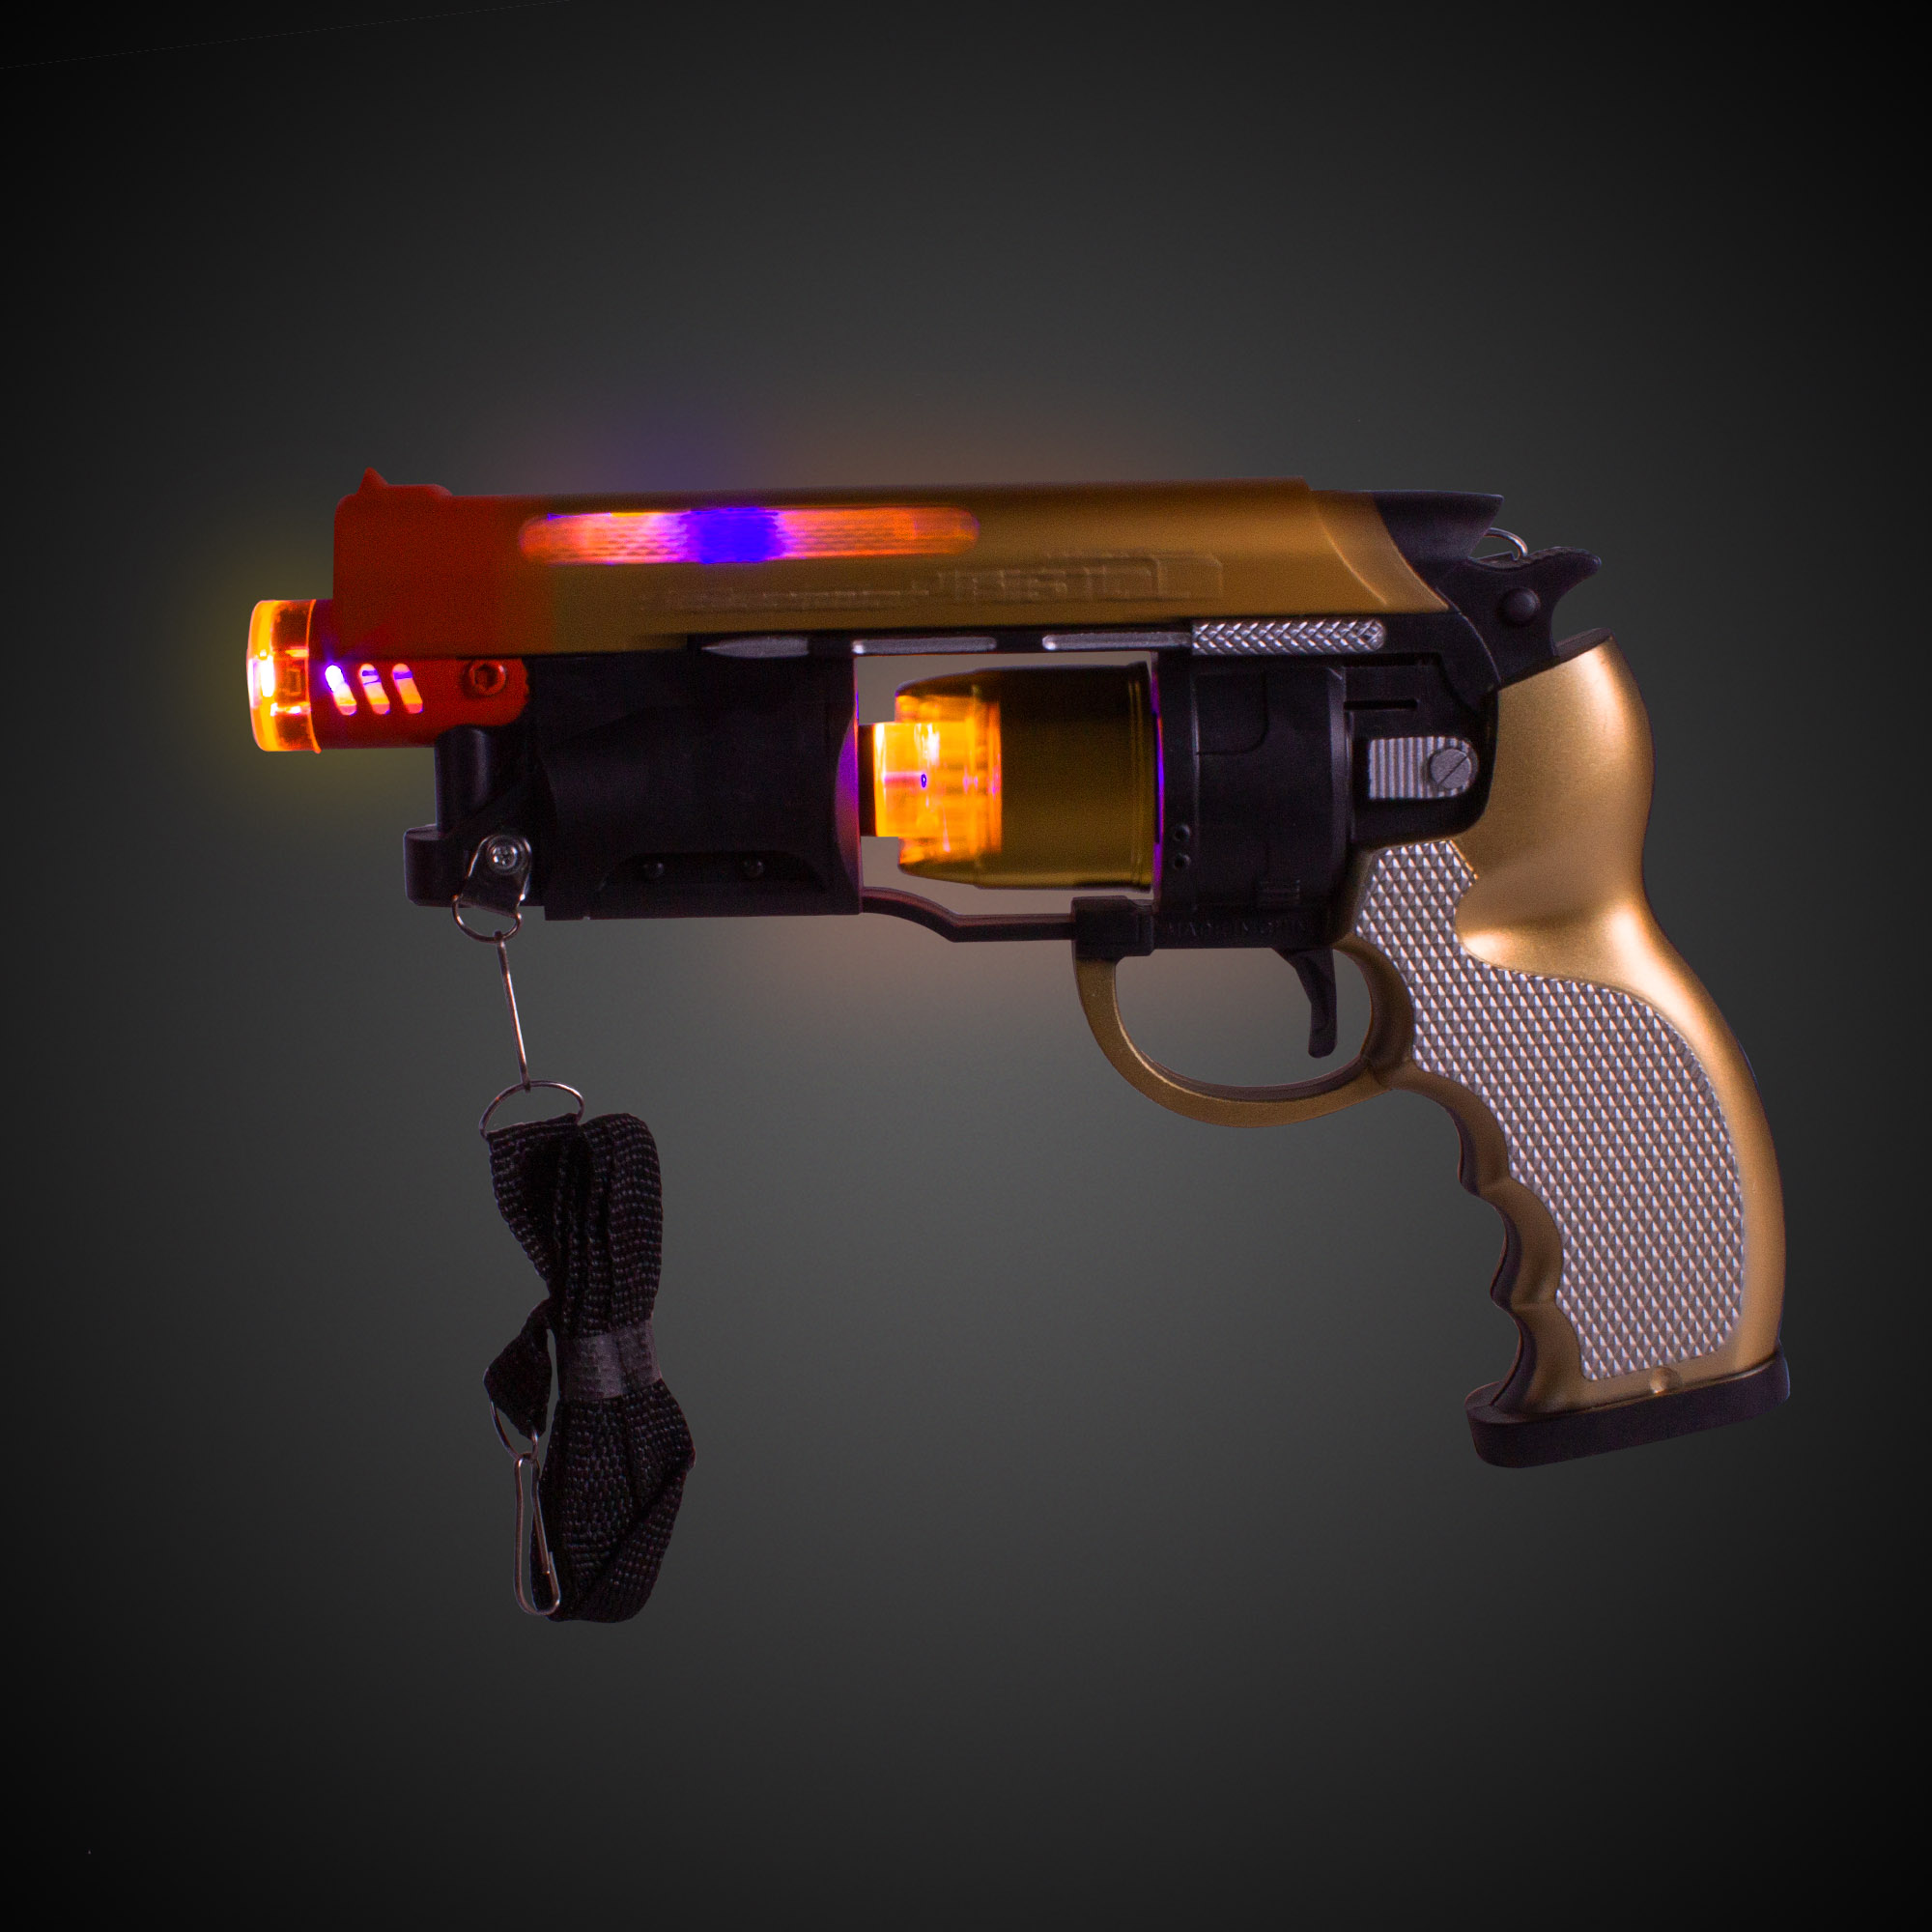 LED Light Up Self Loading Action Toy Pistol Gun 